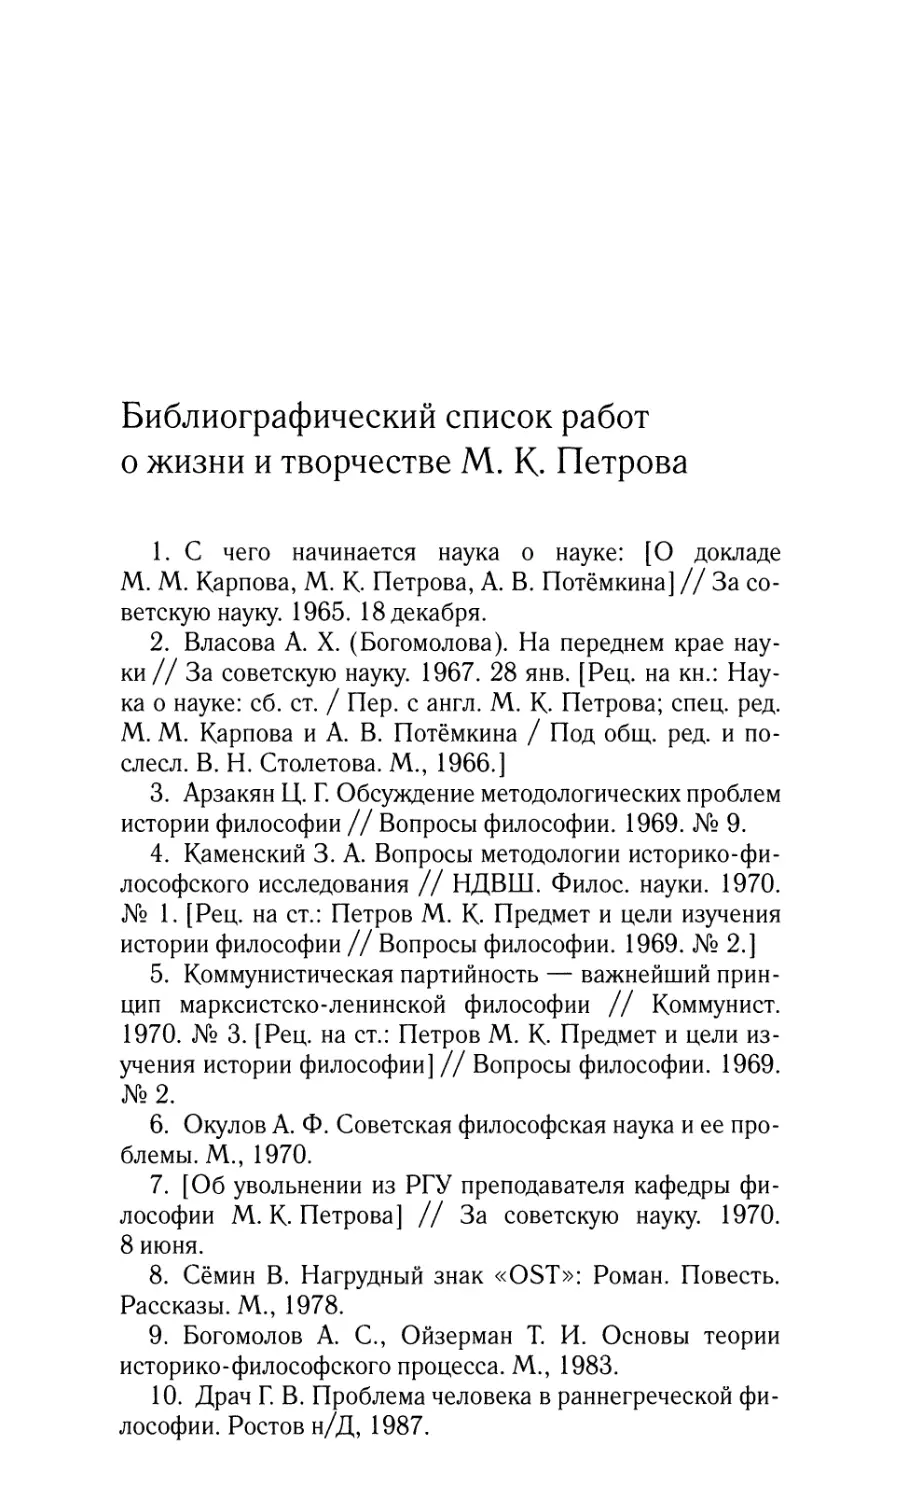 Библиографический список работ о жизни и творчестве М.К.Петрова